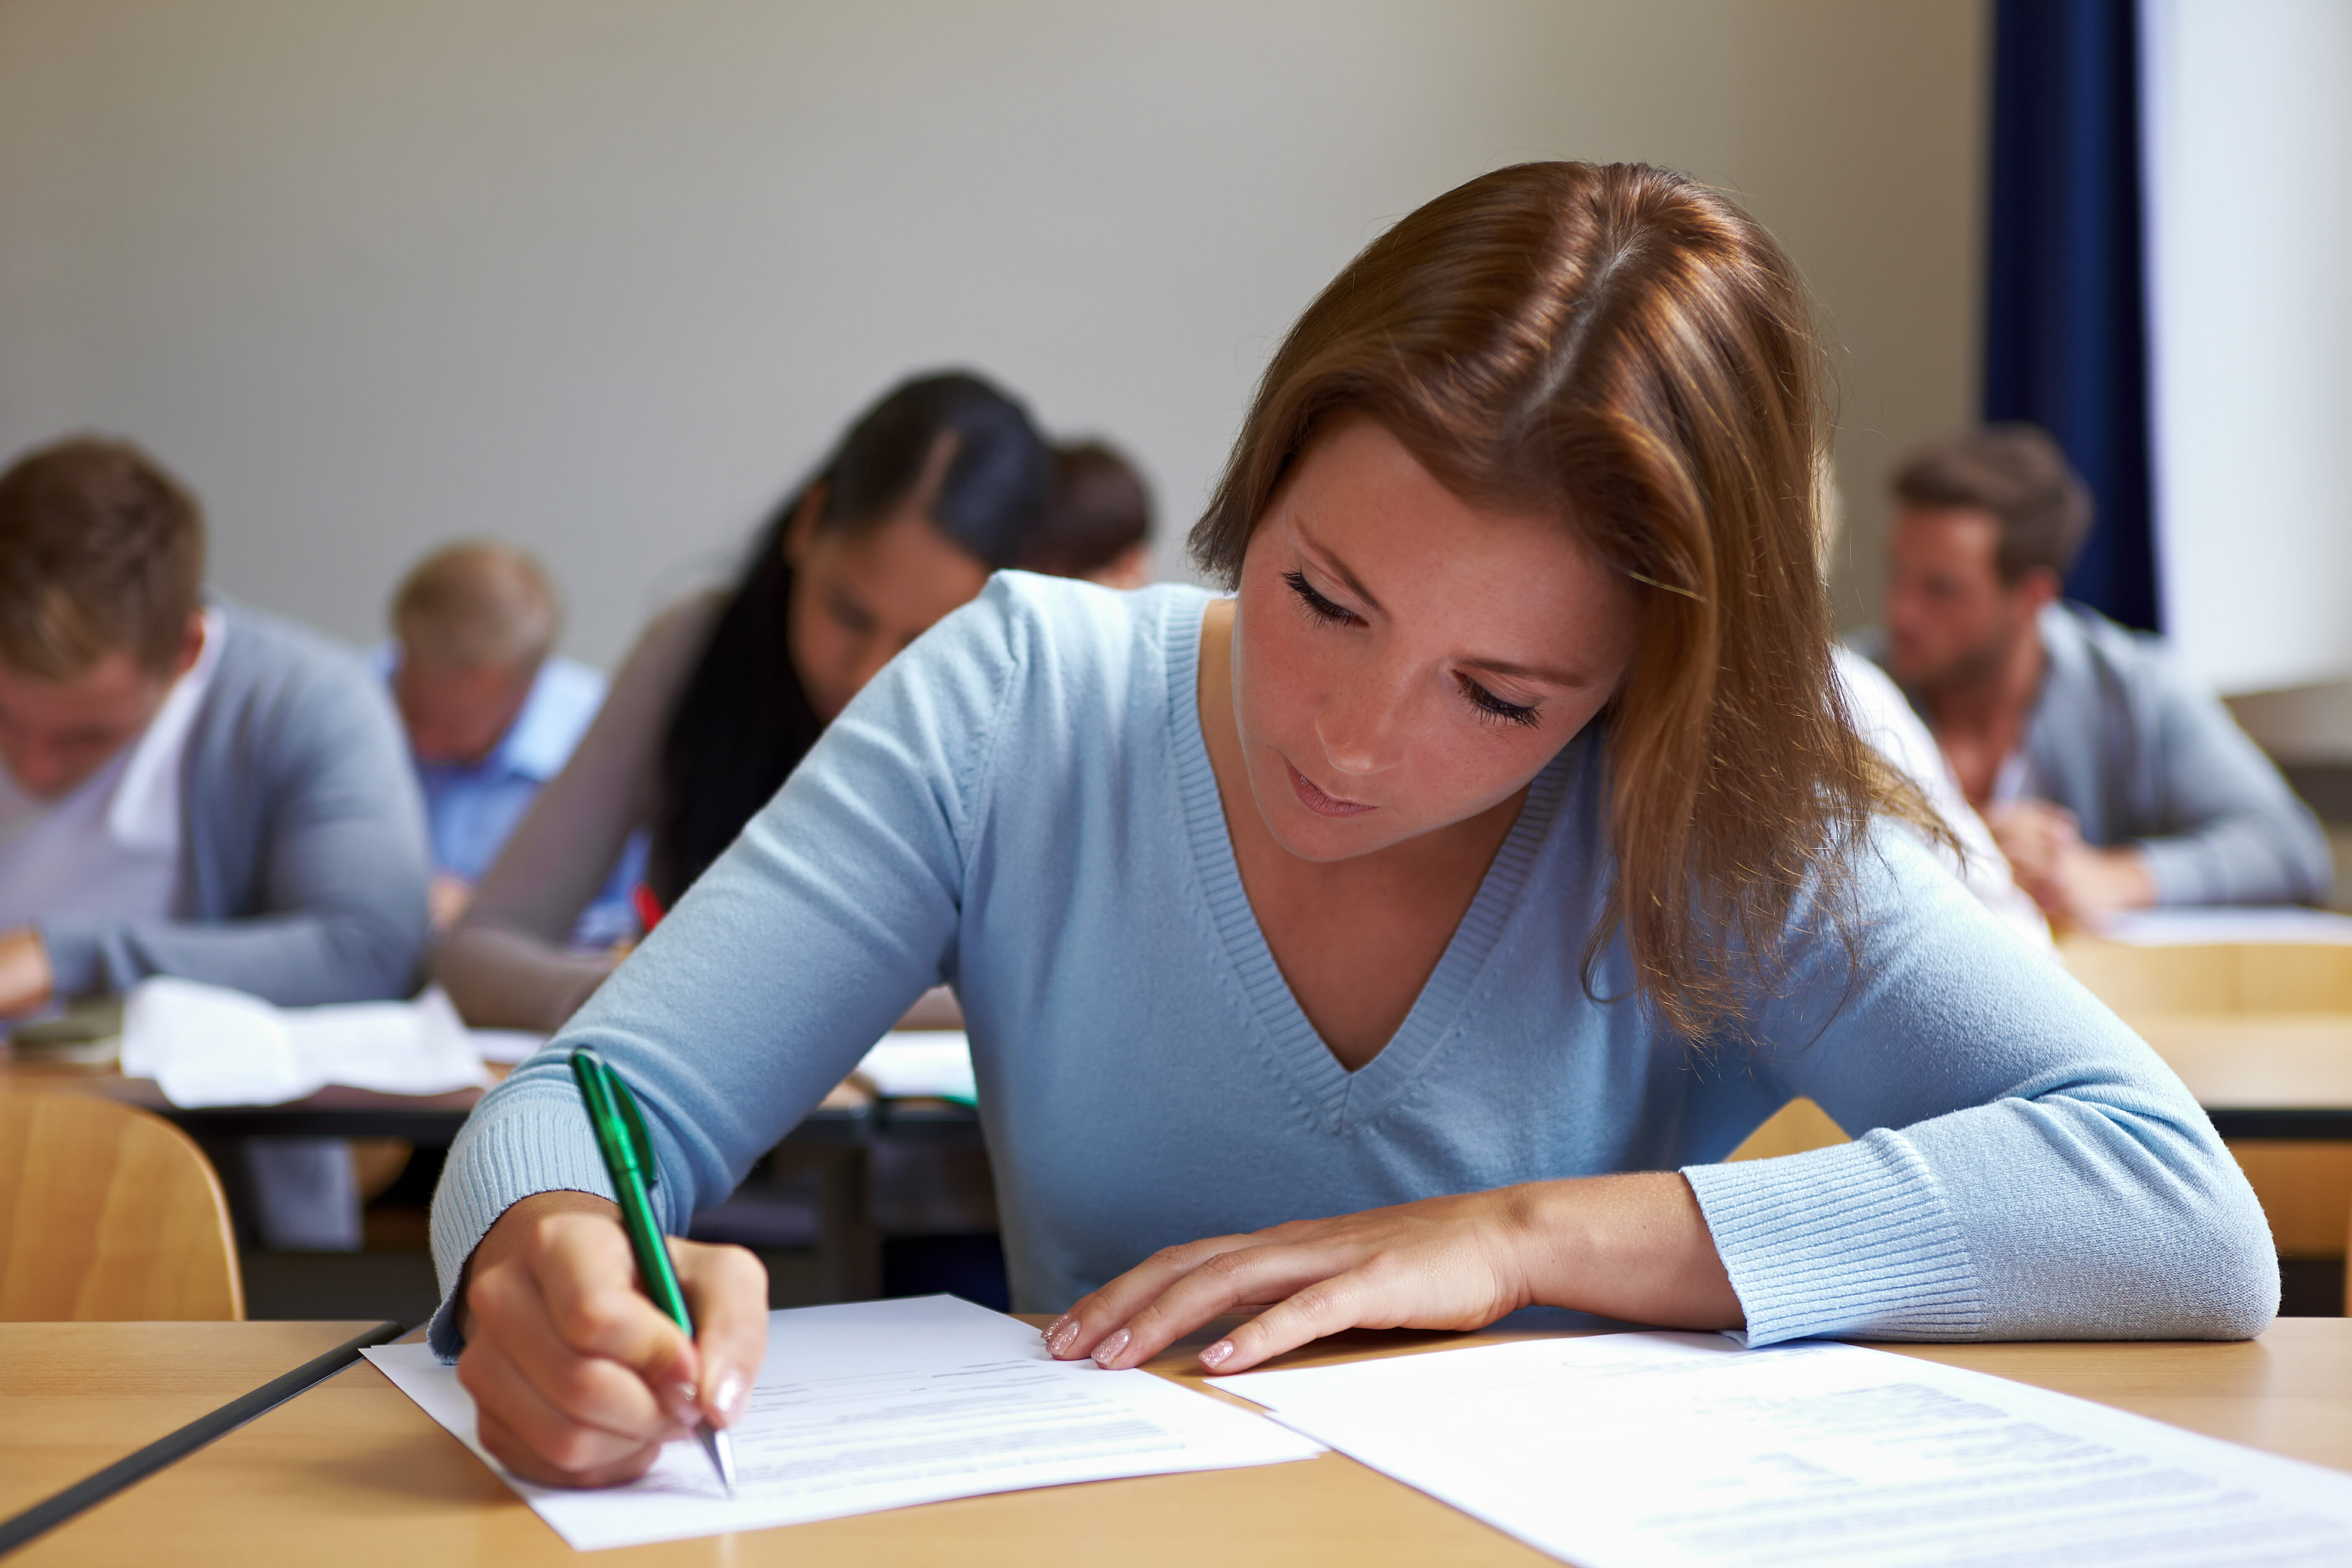 Certificazioni di inglese: nella foto giovane donna nell'aula dell'esame.